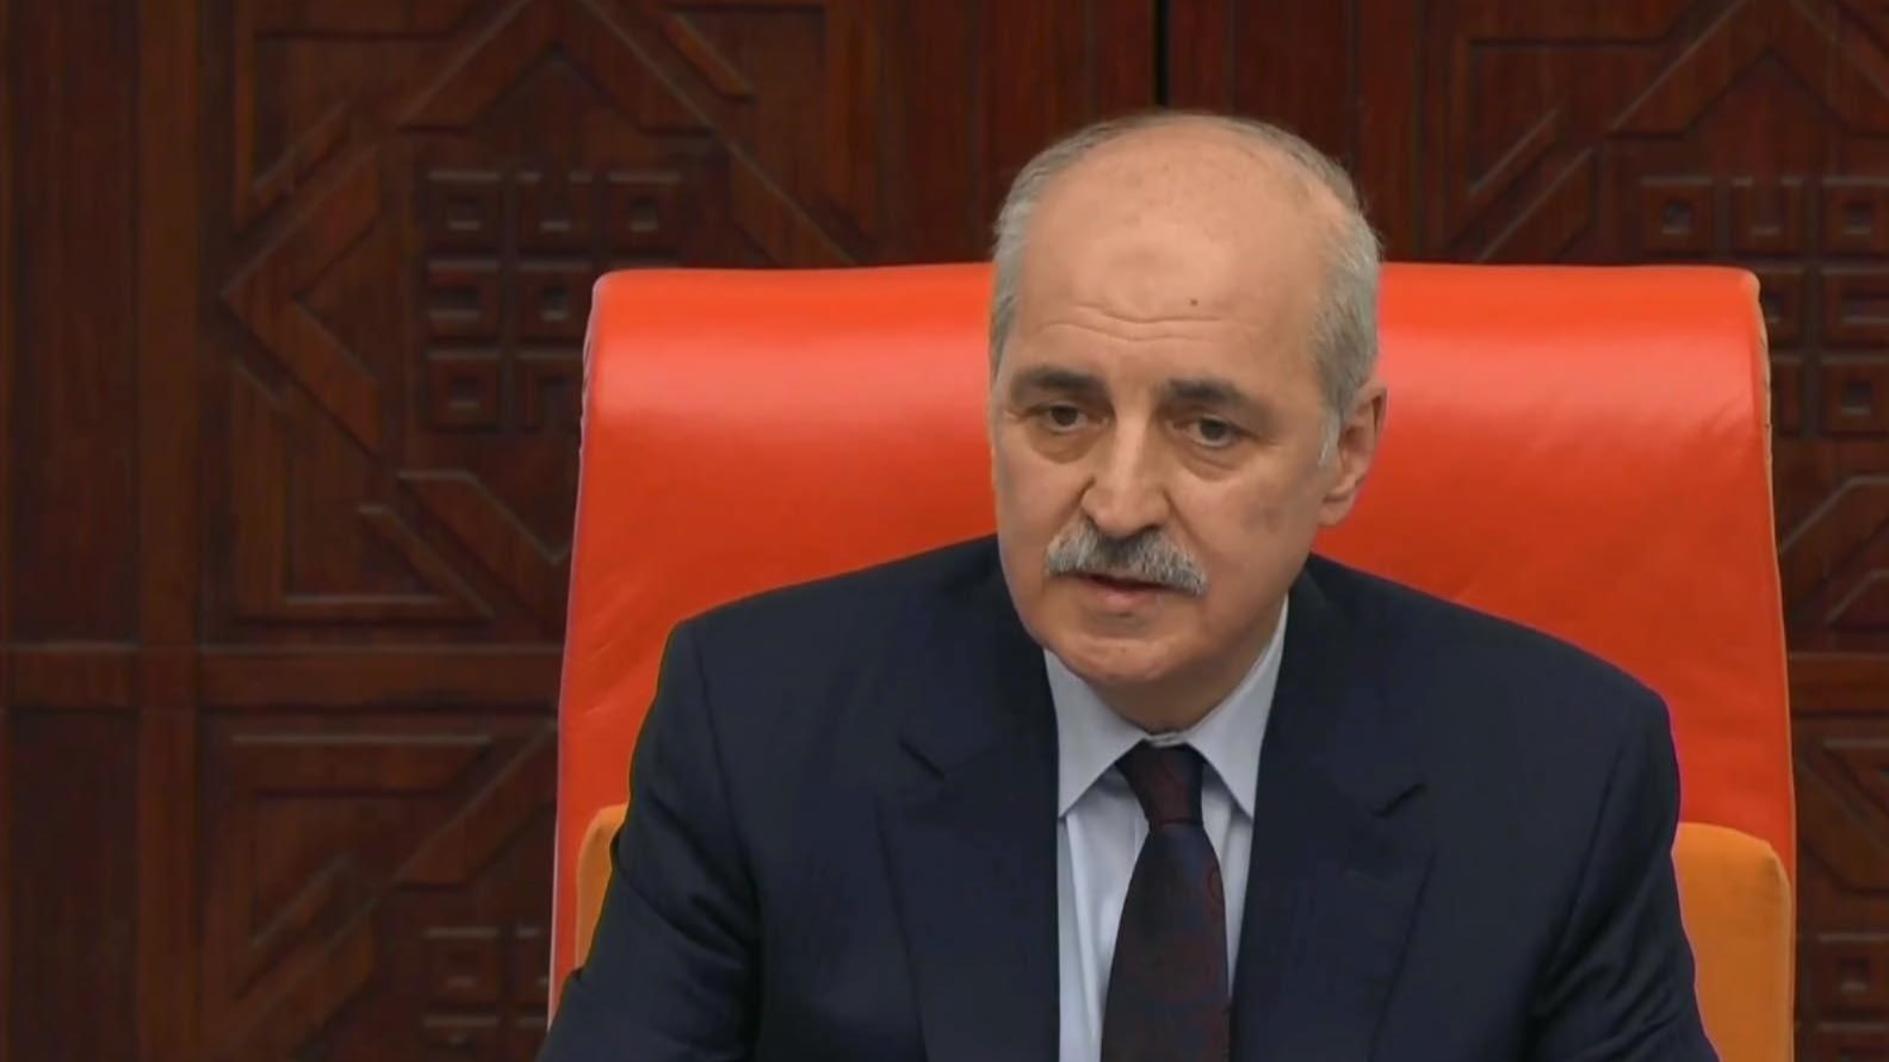 Kurtulmuş zegt dat het parlement constitutionele conflicten moet aanpakken